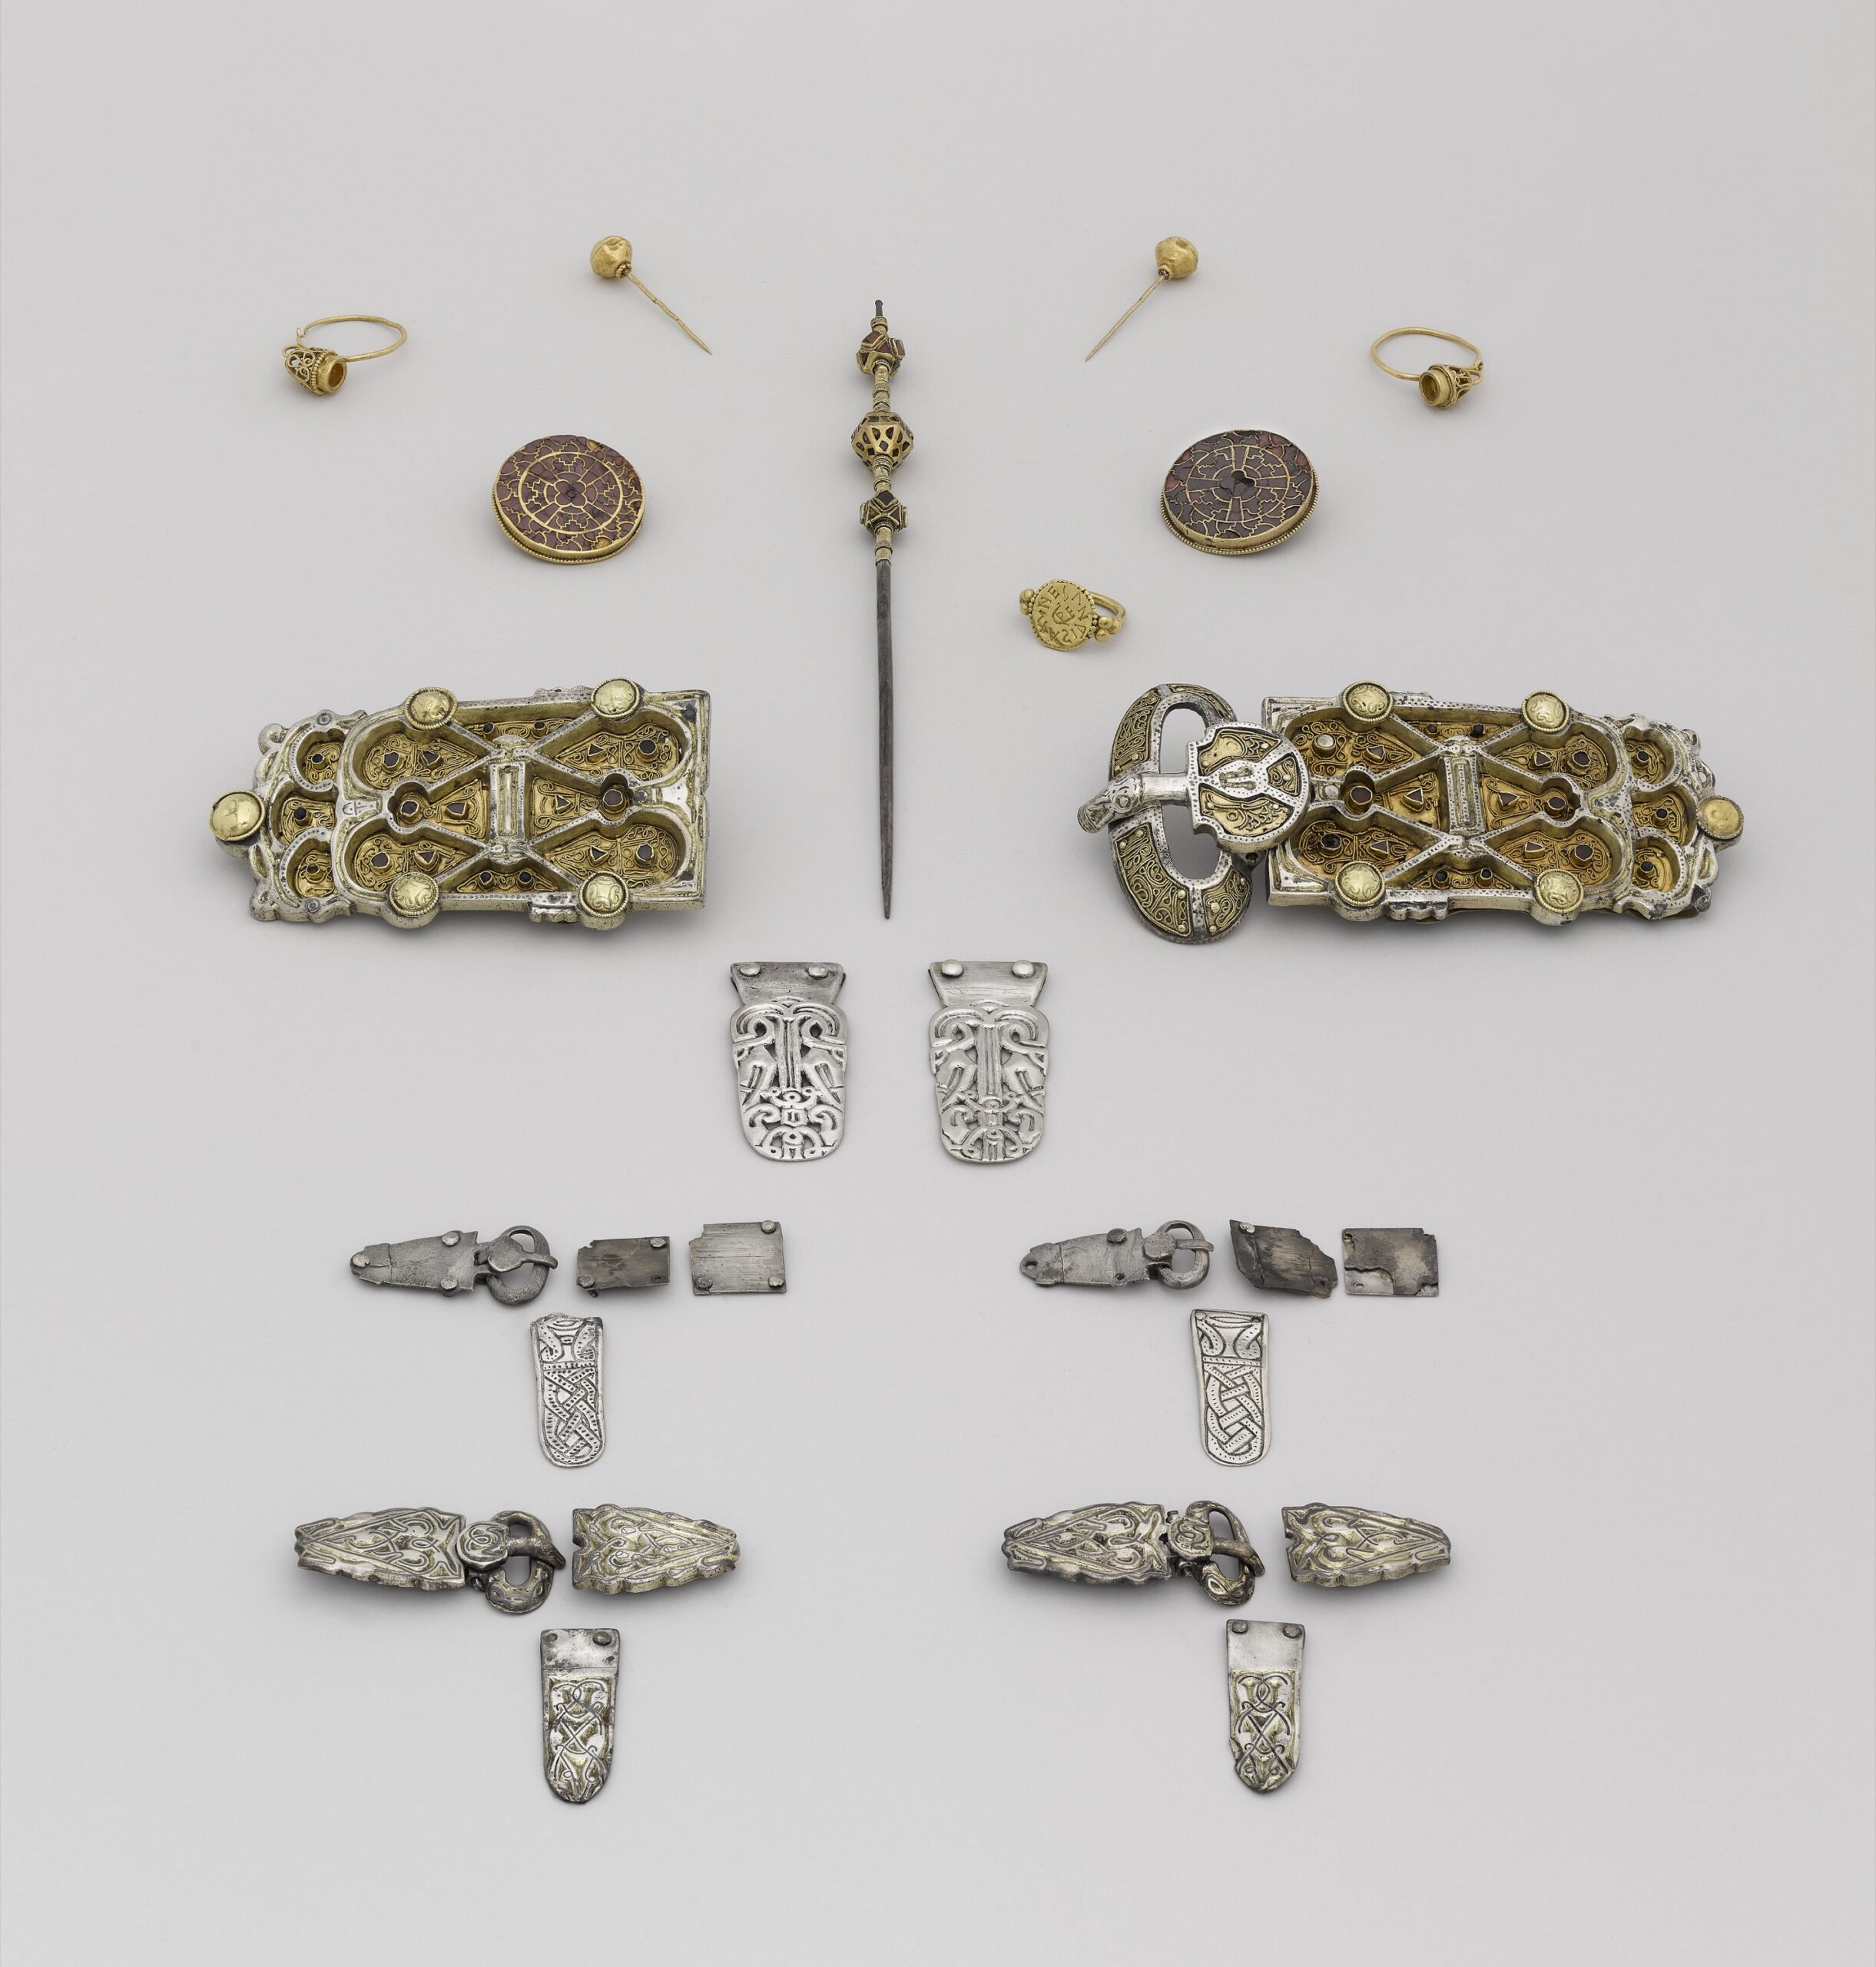 Bijoux de la reine Arégonde. © RMN-Grand Palais (musée d'Archéologie nationale) / Franck Raux